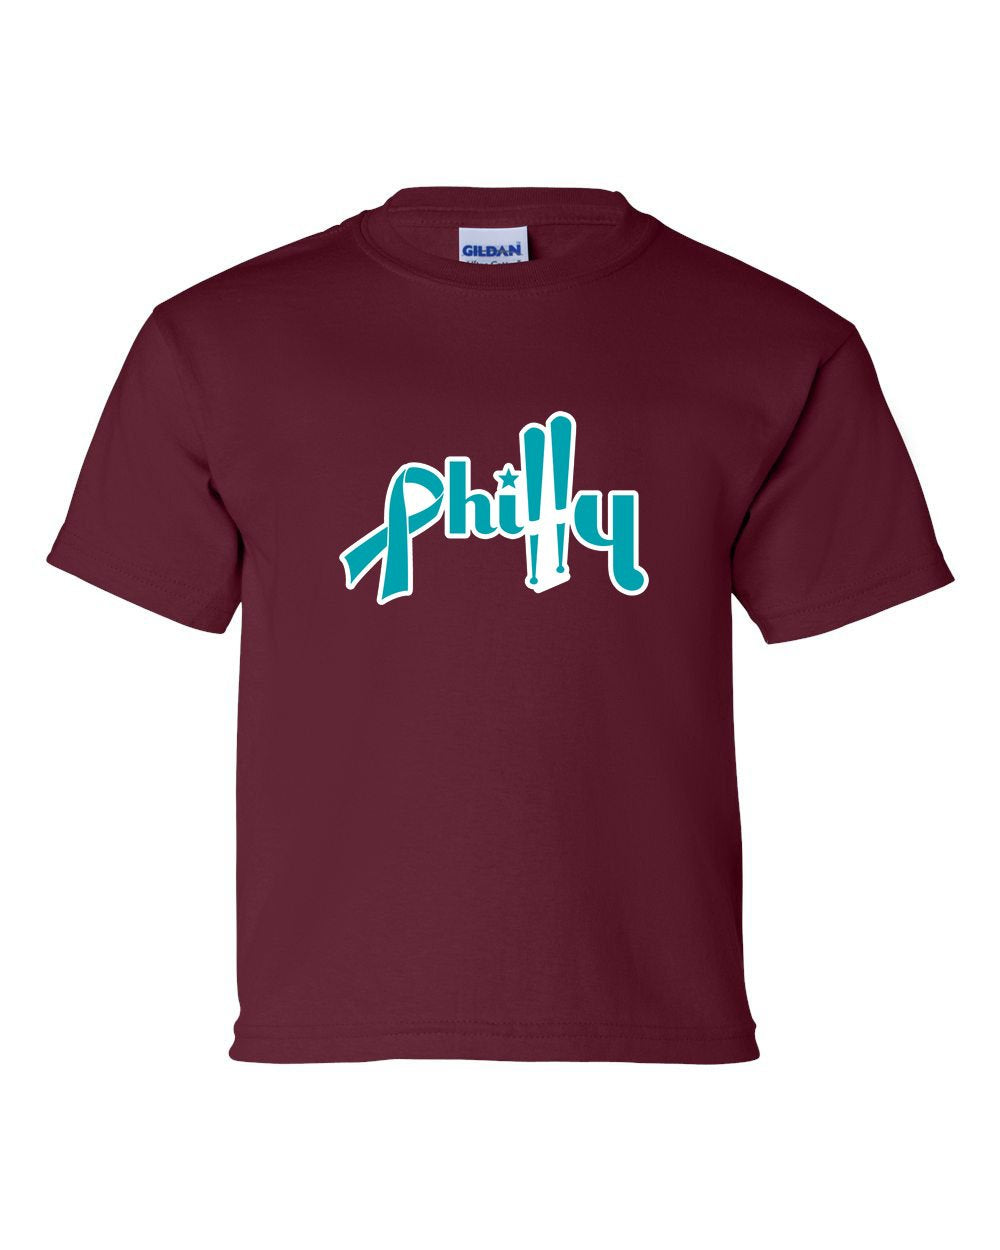 Ovarian Philly KIDS T-Shirt